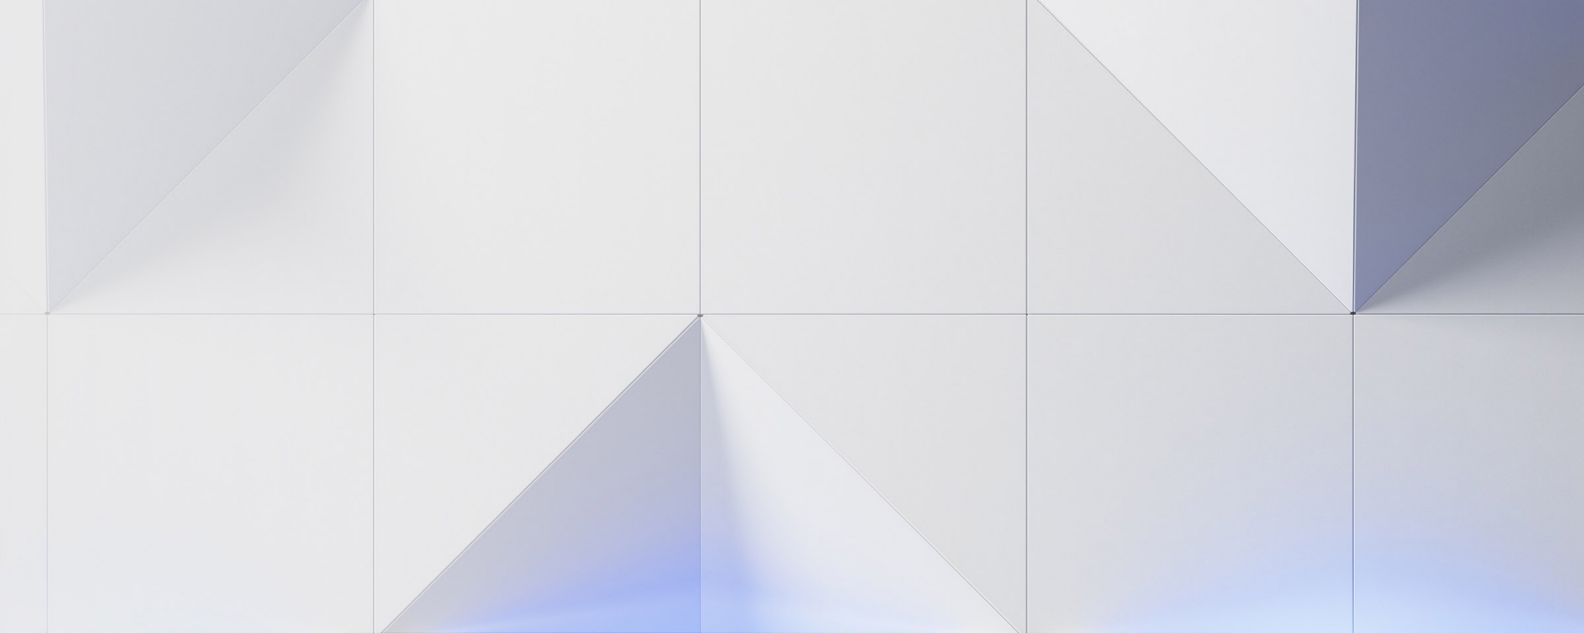 imagen gráfica abstracta con triángulos y cuadrados